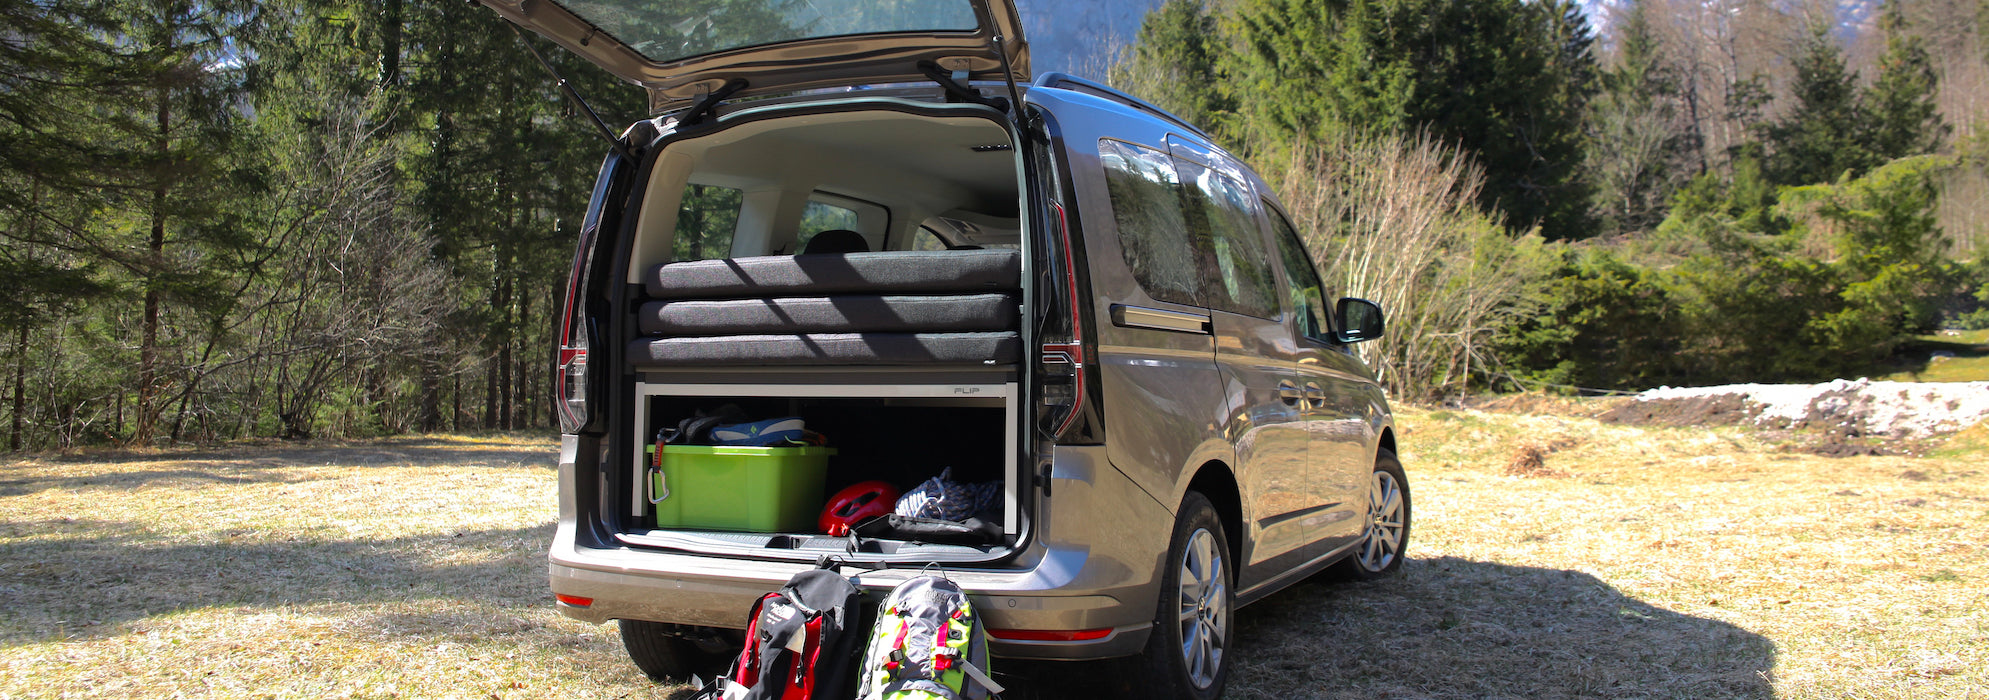 FLIP Adventure Bed - Campervan module with lots of storage space